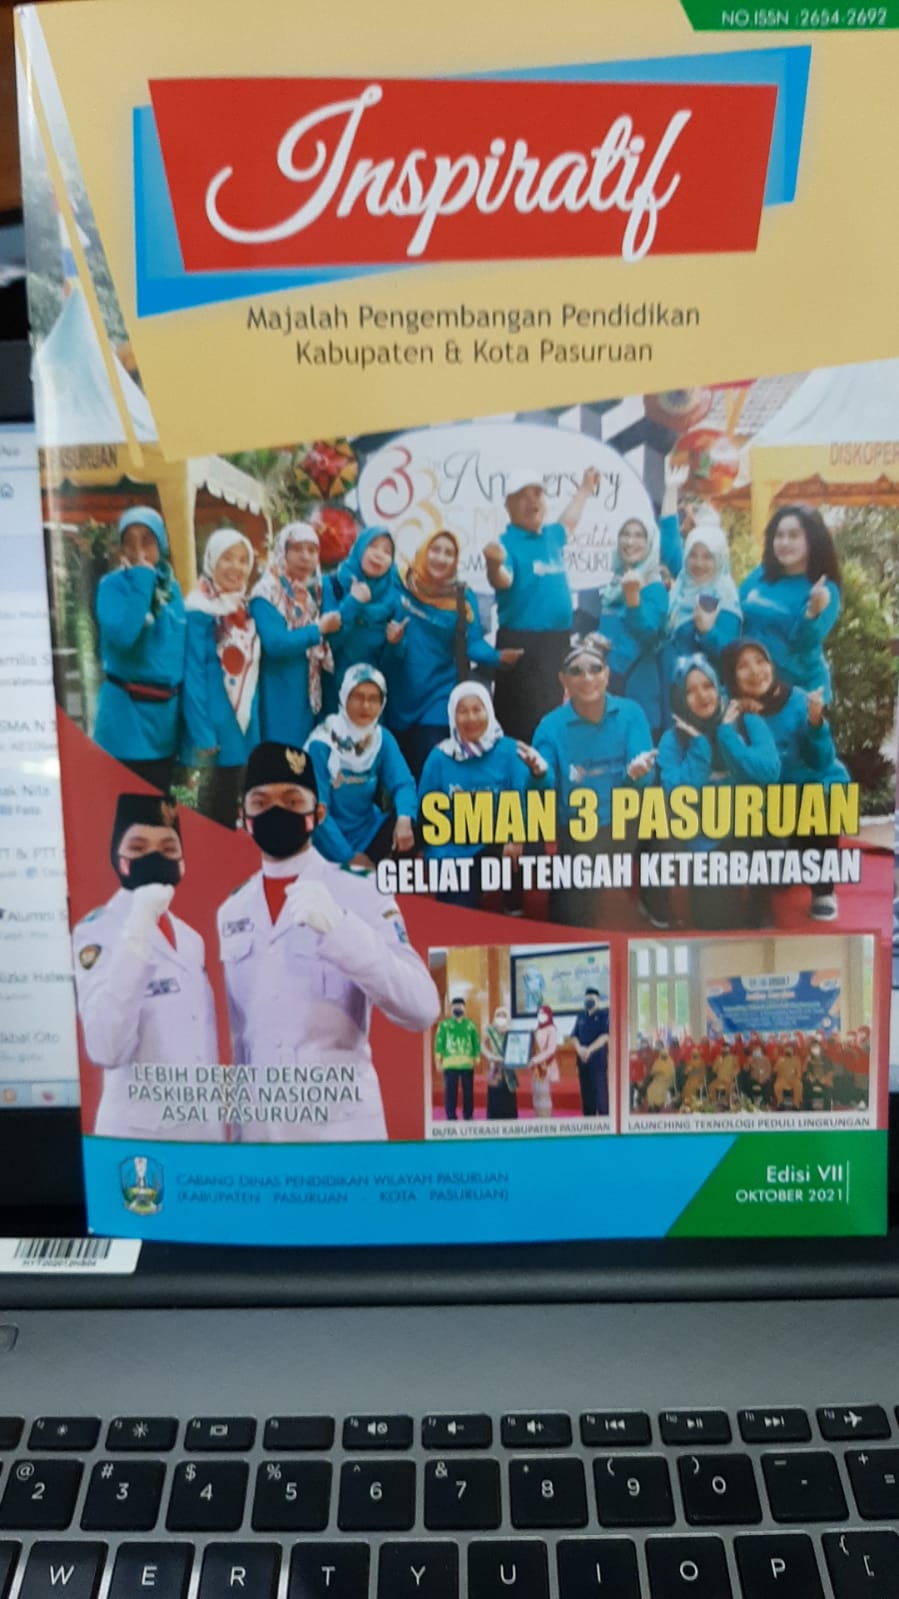 Inspiratif Majalah Pengembangan Pendidikan Kabupaten & Kota Pasuruan Edisi VII Oktober 2021